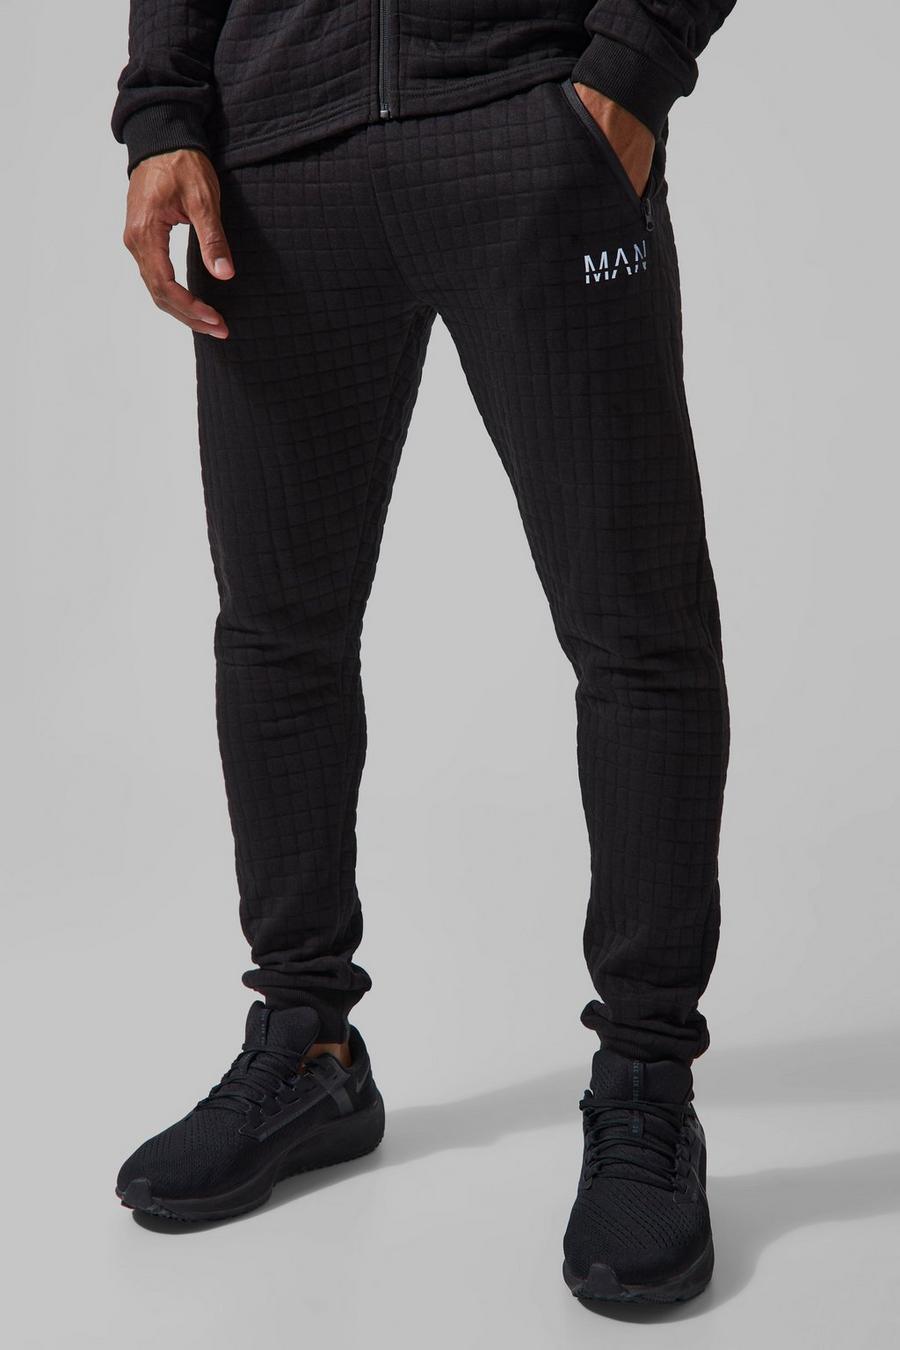 Pantalón deportivo pitillo texturizado de tela jersey, Black